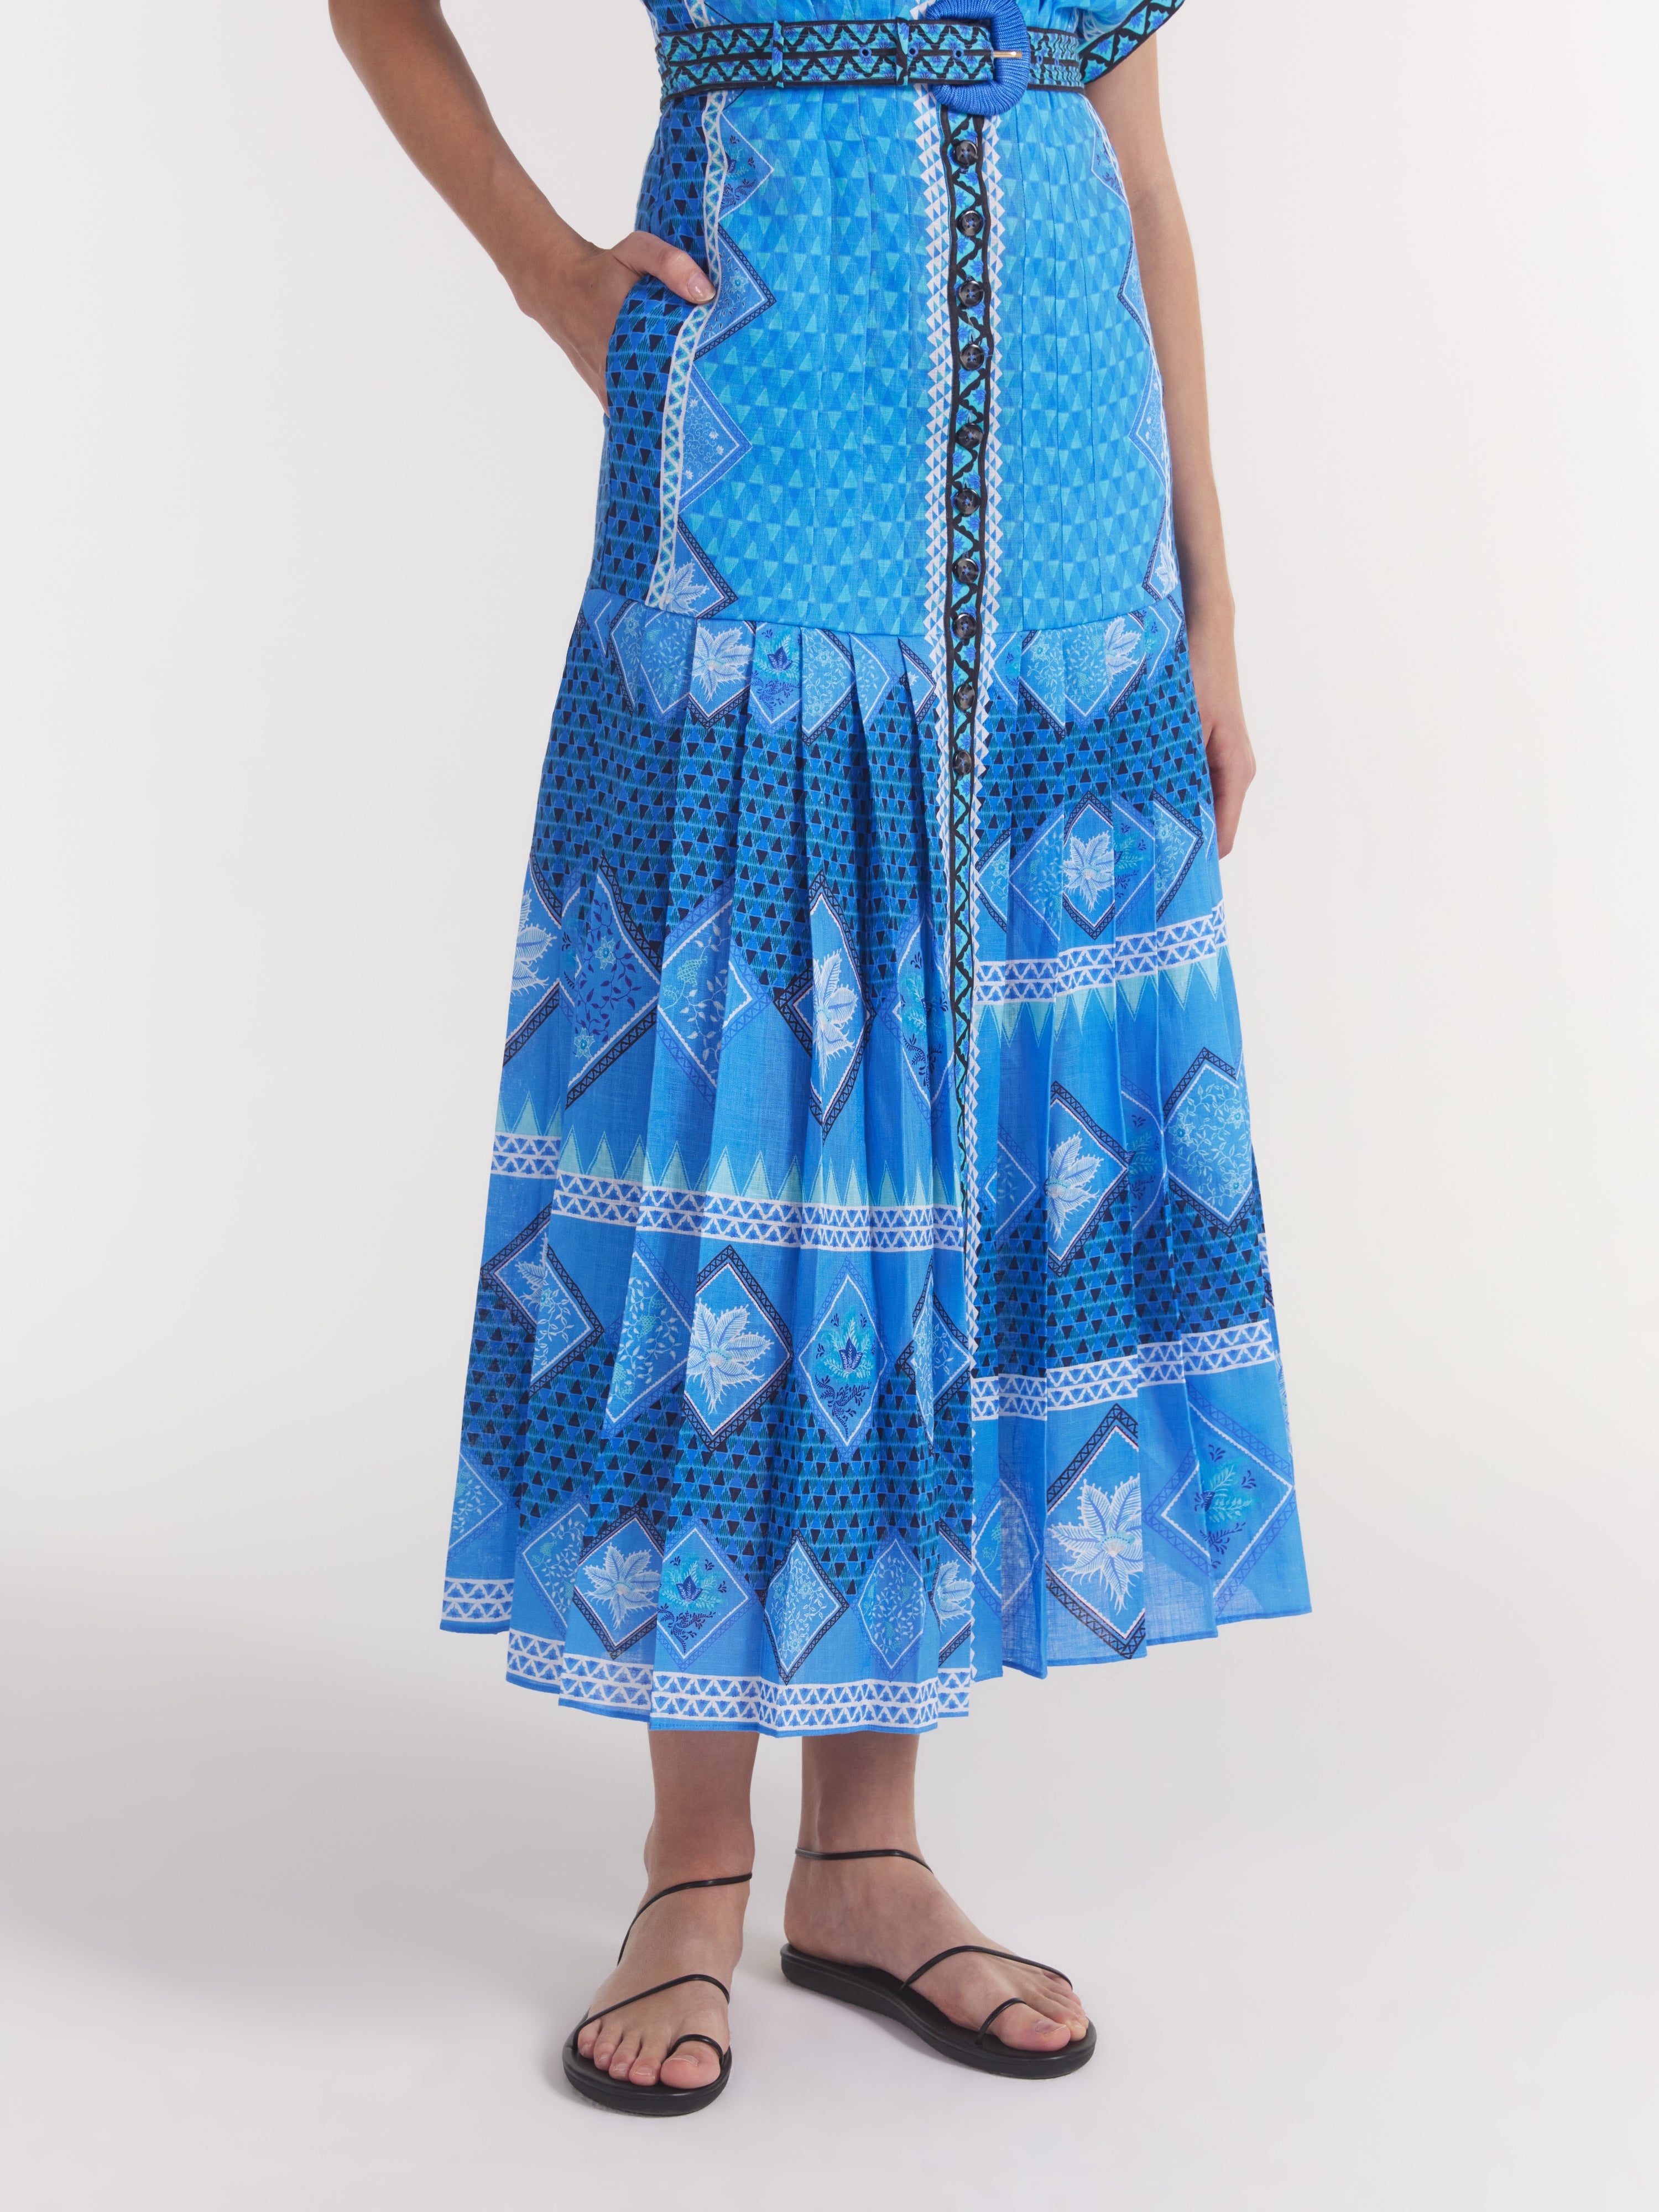 Riya B Dress in Peri Verdant